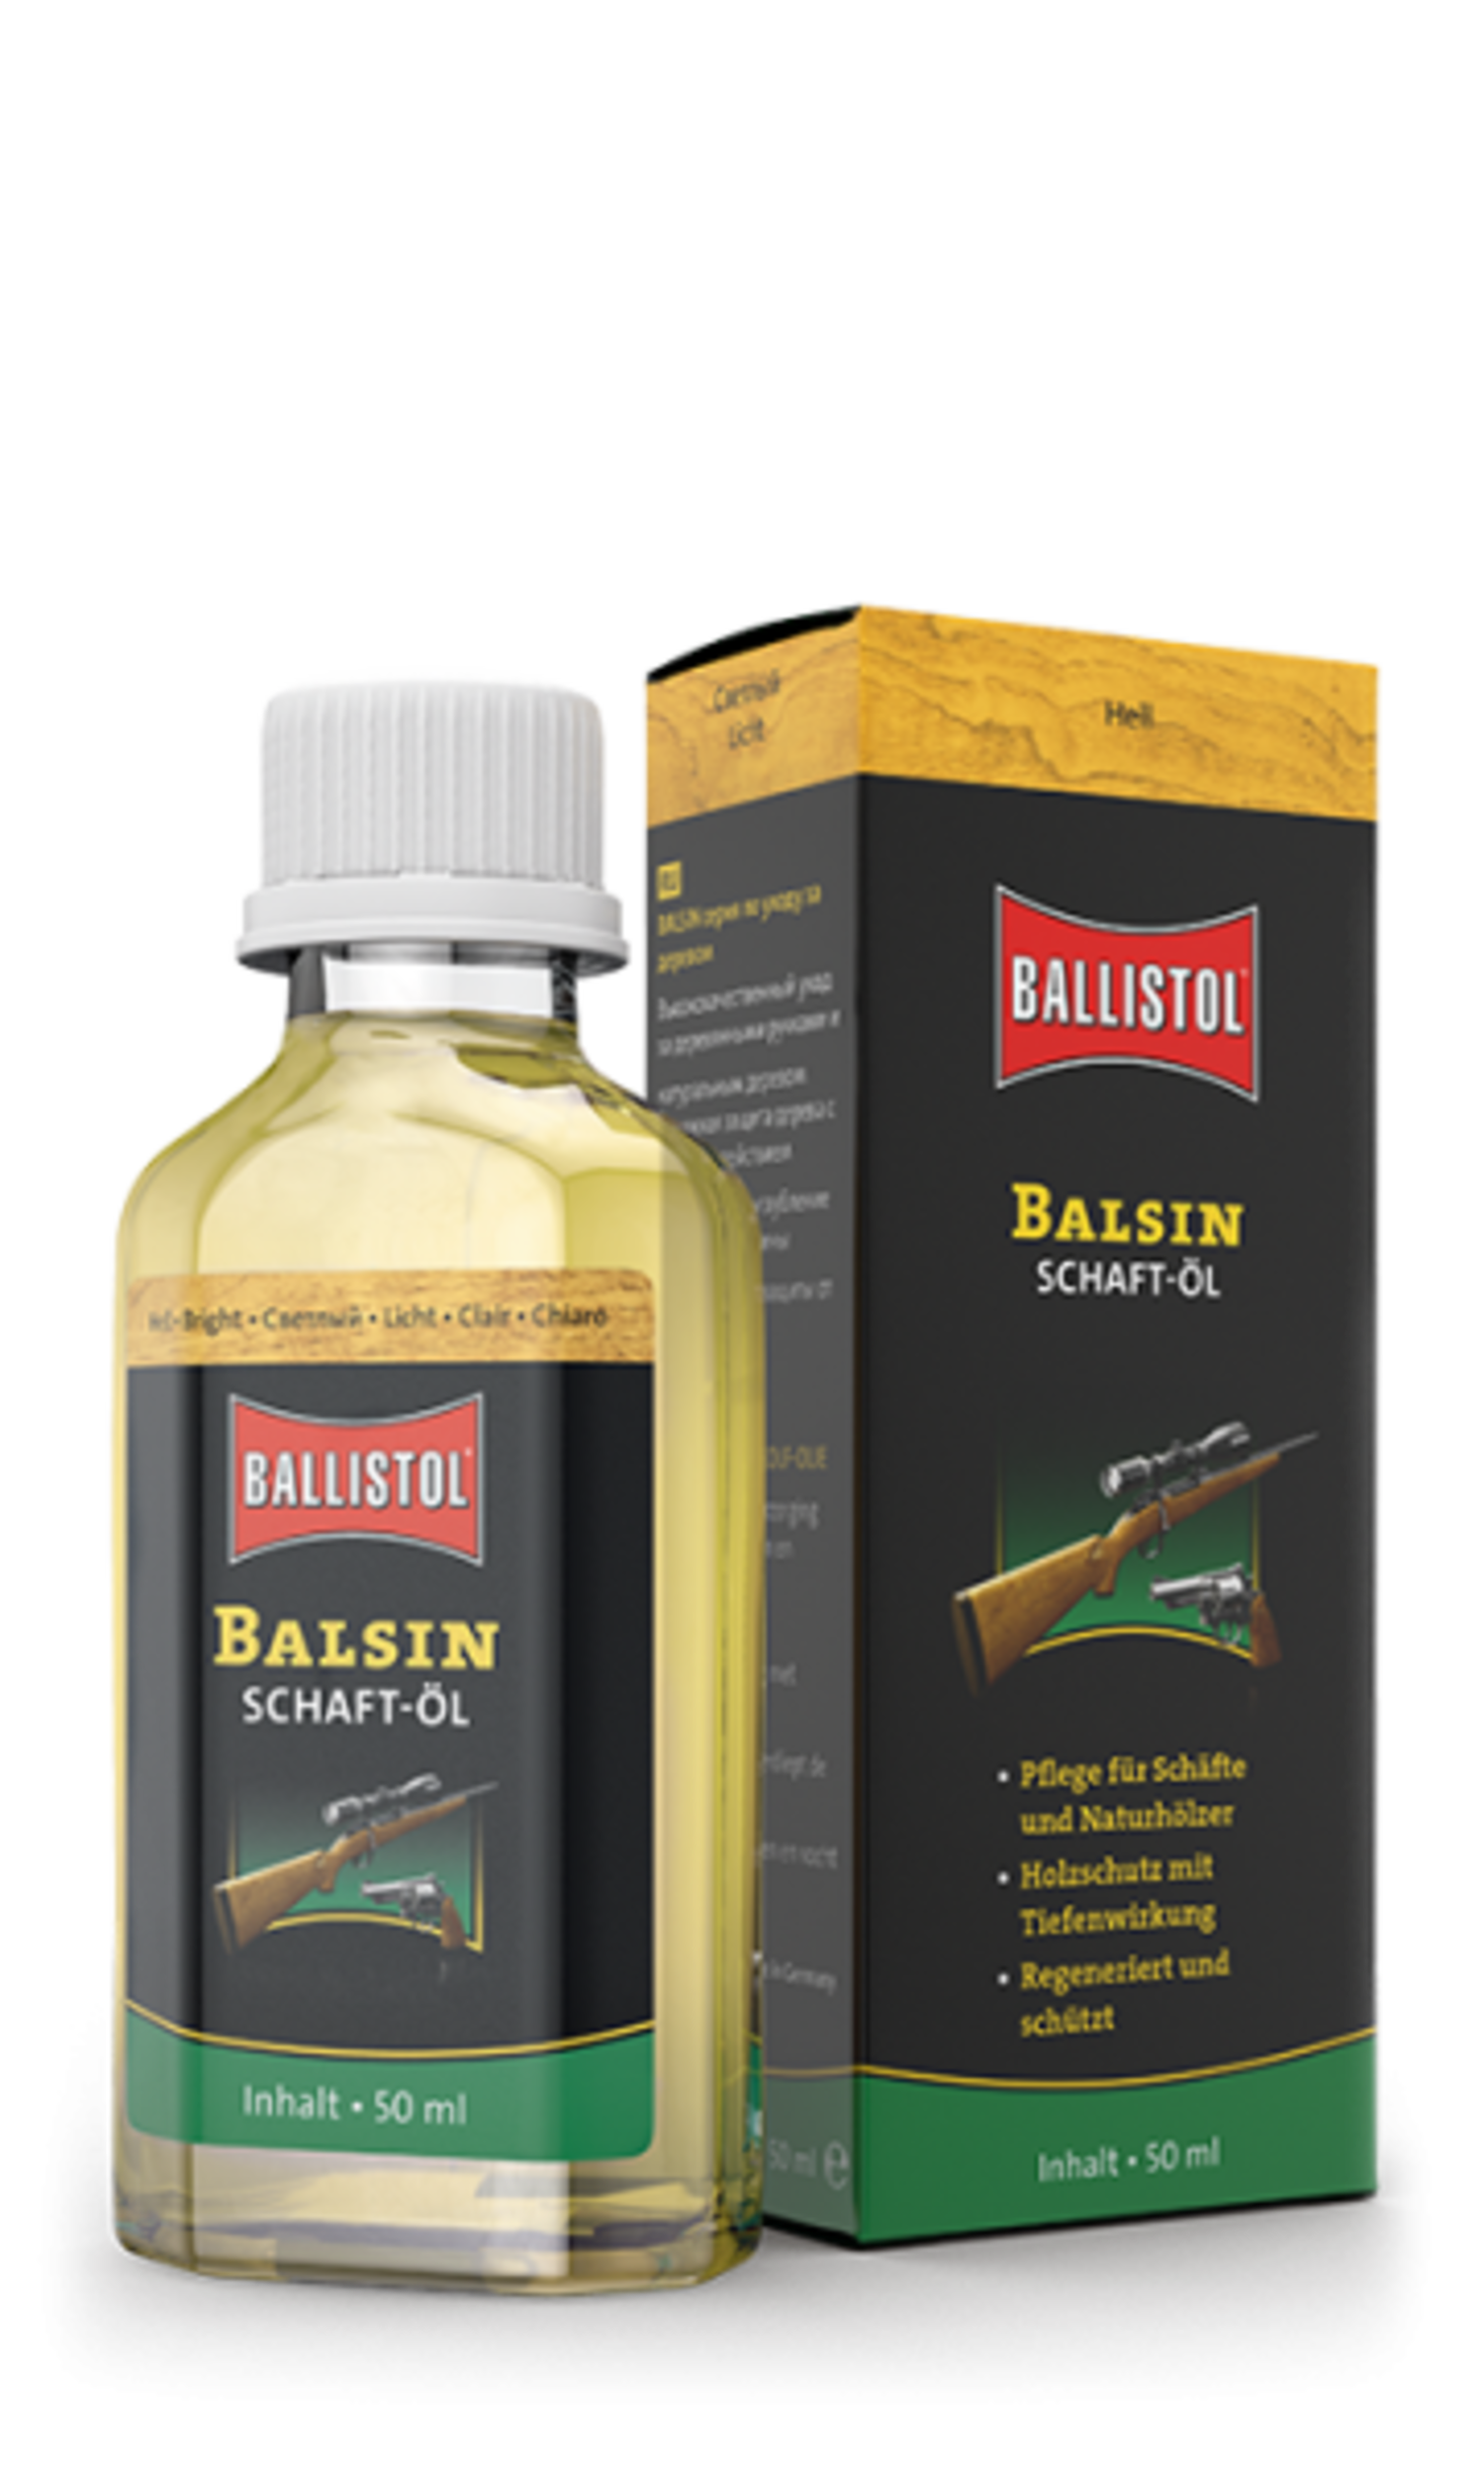 Formula Ballistol Universal Oil 50ml